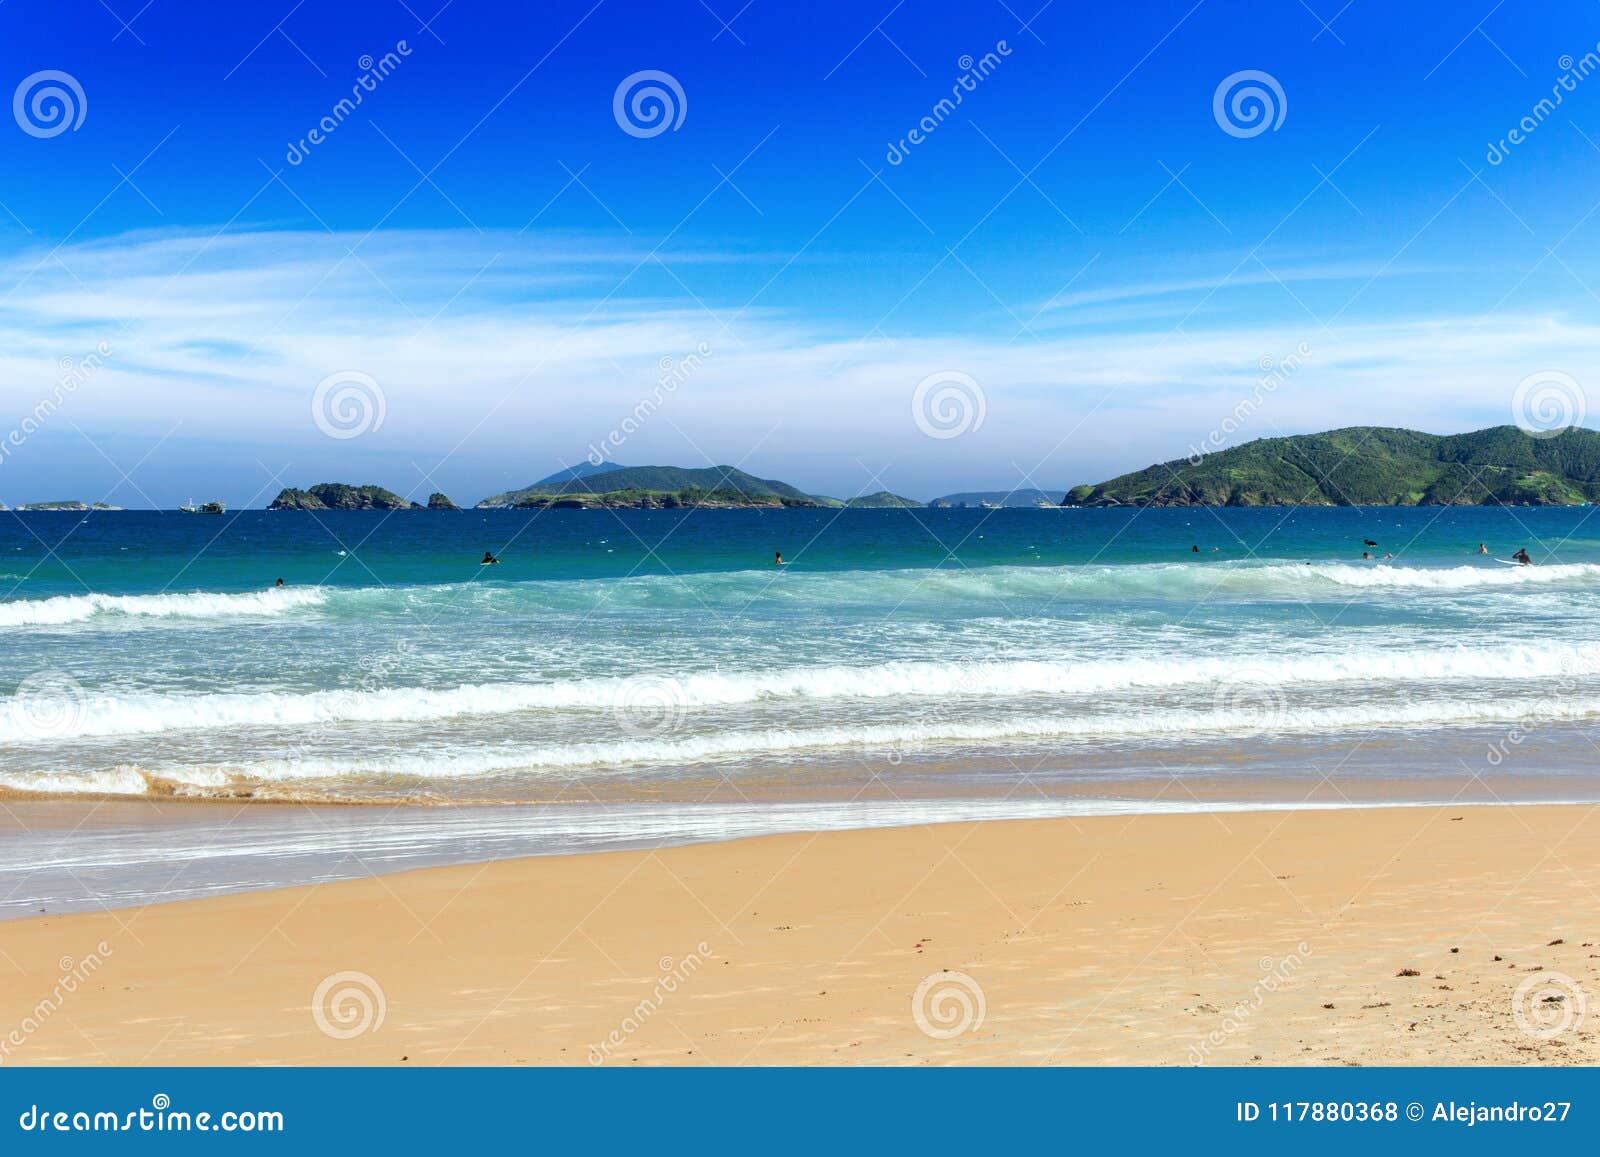 geriba beach, buzios, rio de janeiro, brazil: panoramic view of the geriba beach in a sunny day. blue sea with waves and golden sa